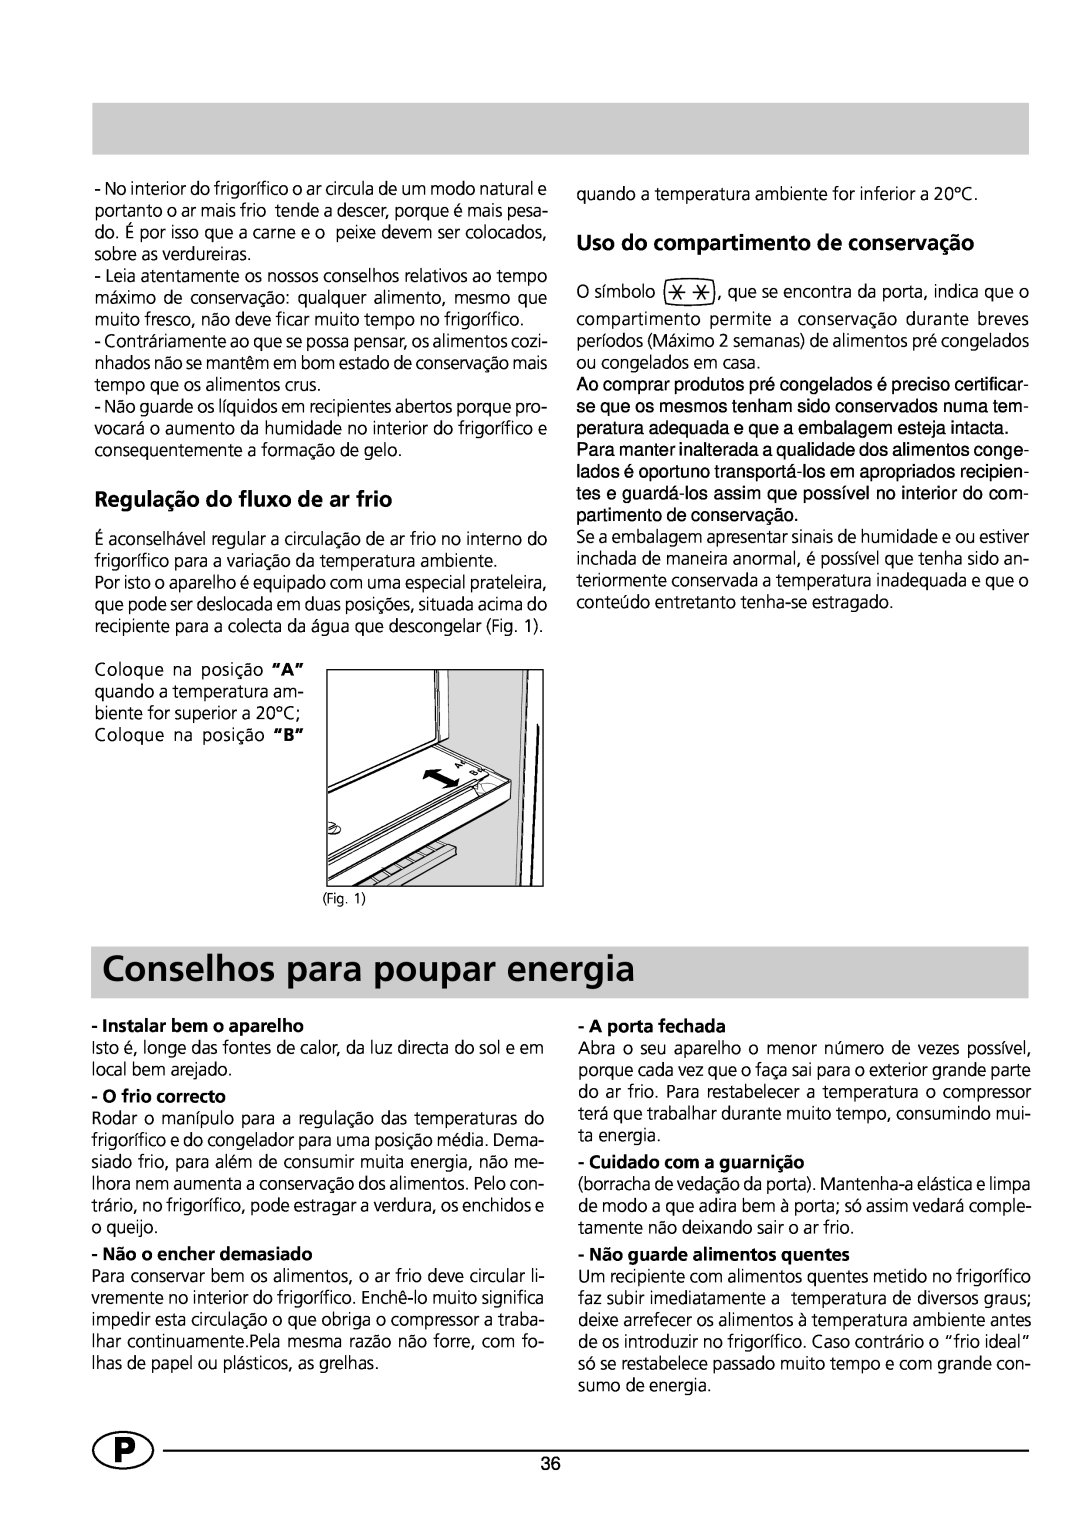 Indesit RG1142 manual Conselhos para poupar energia, Regulação do fluxo de ar frio, Uso do compartimento de conservação 